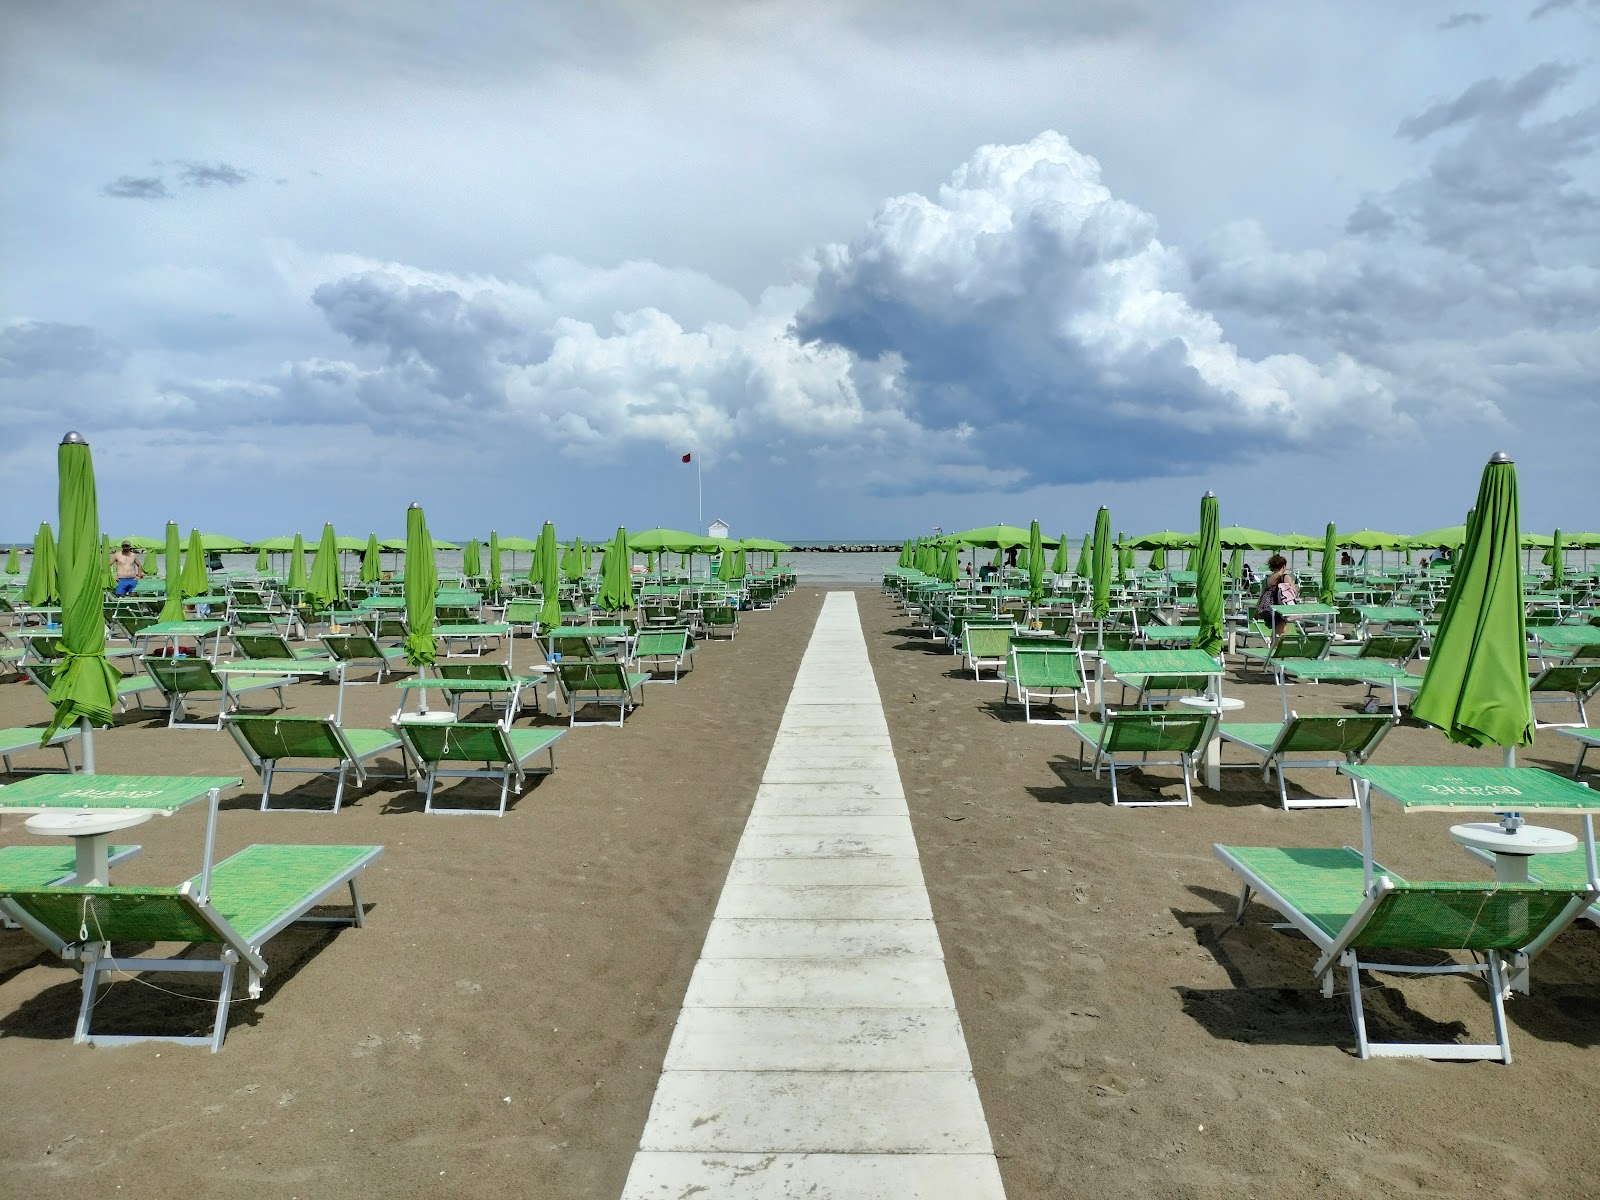 Foto af Spiaggia Libera Igea Marina - populært sted blandt afslapningskendere